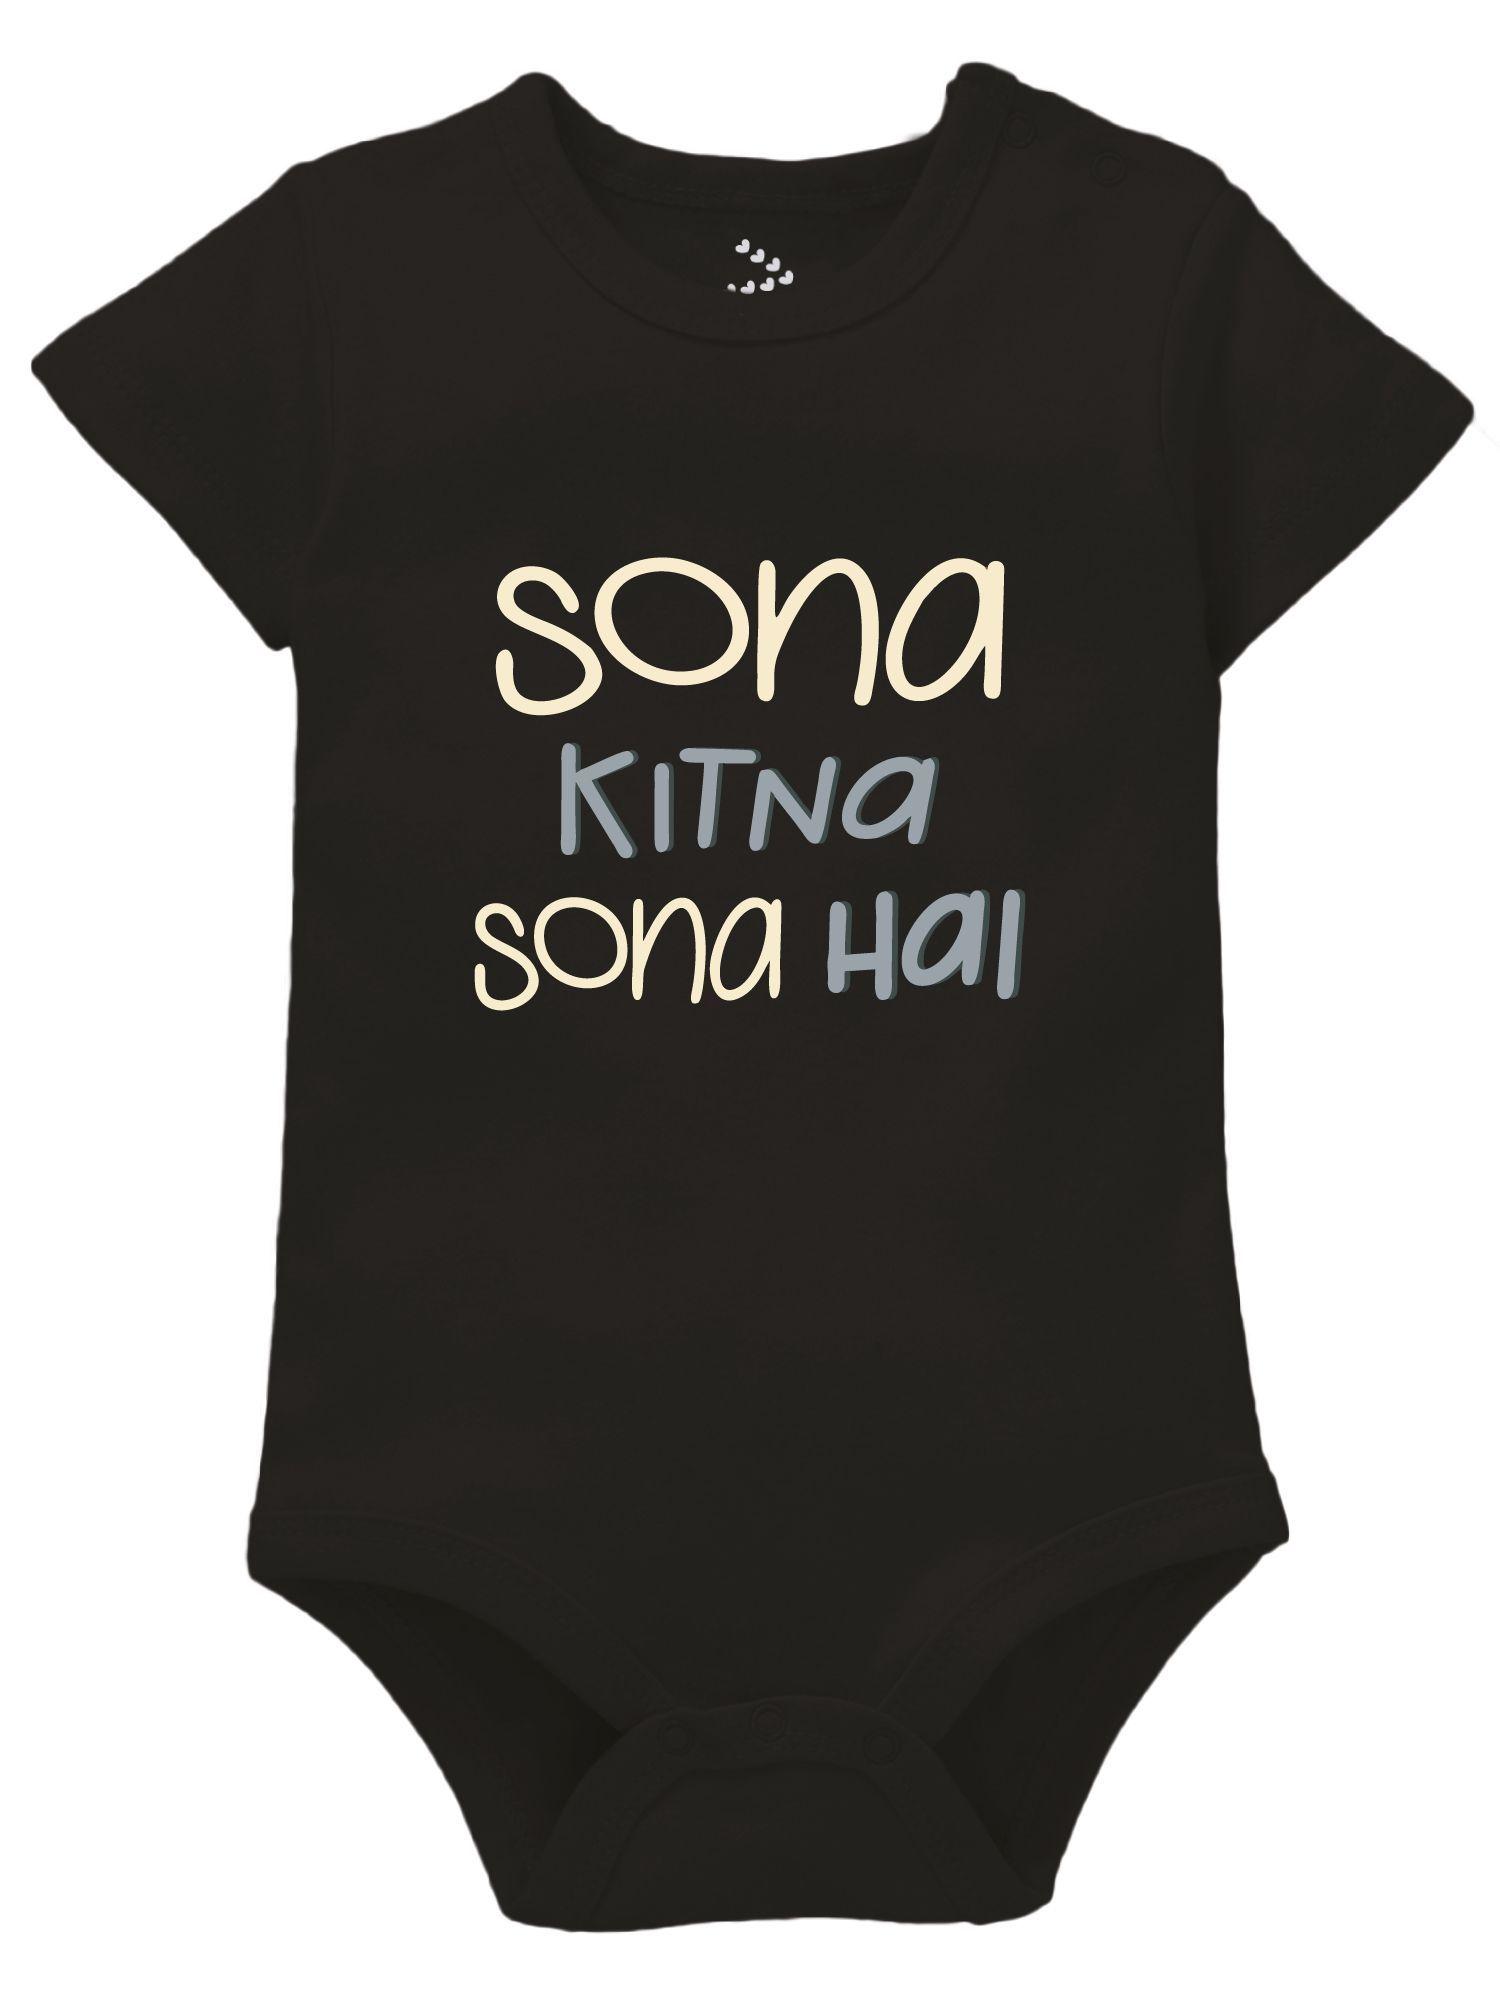 Sona Kitna Sona Hai Newborn Baby Romper Clothes New Born Baby Theme